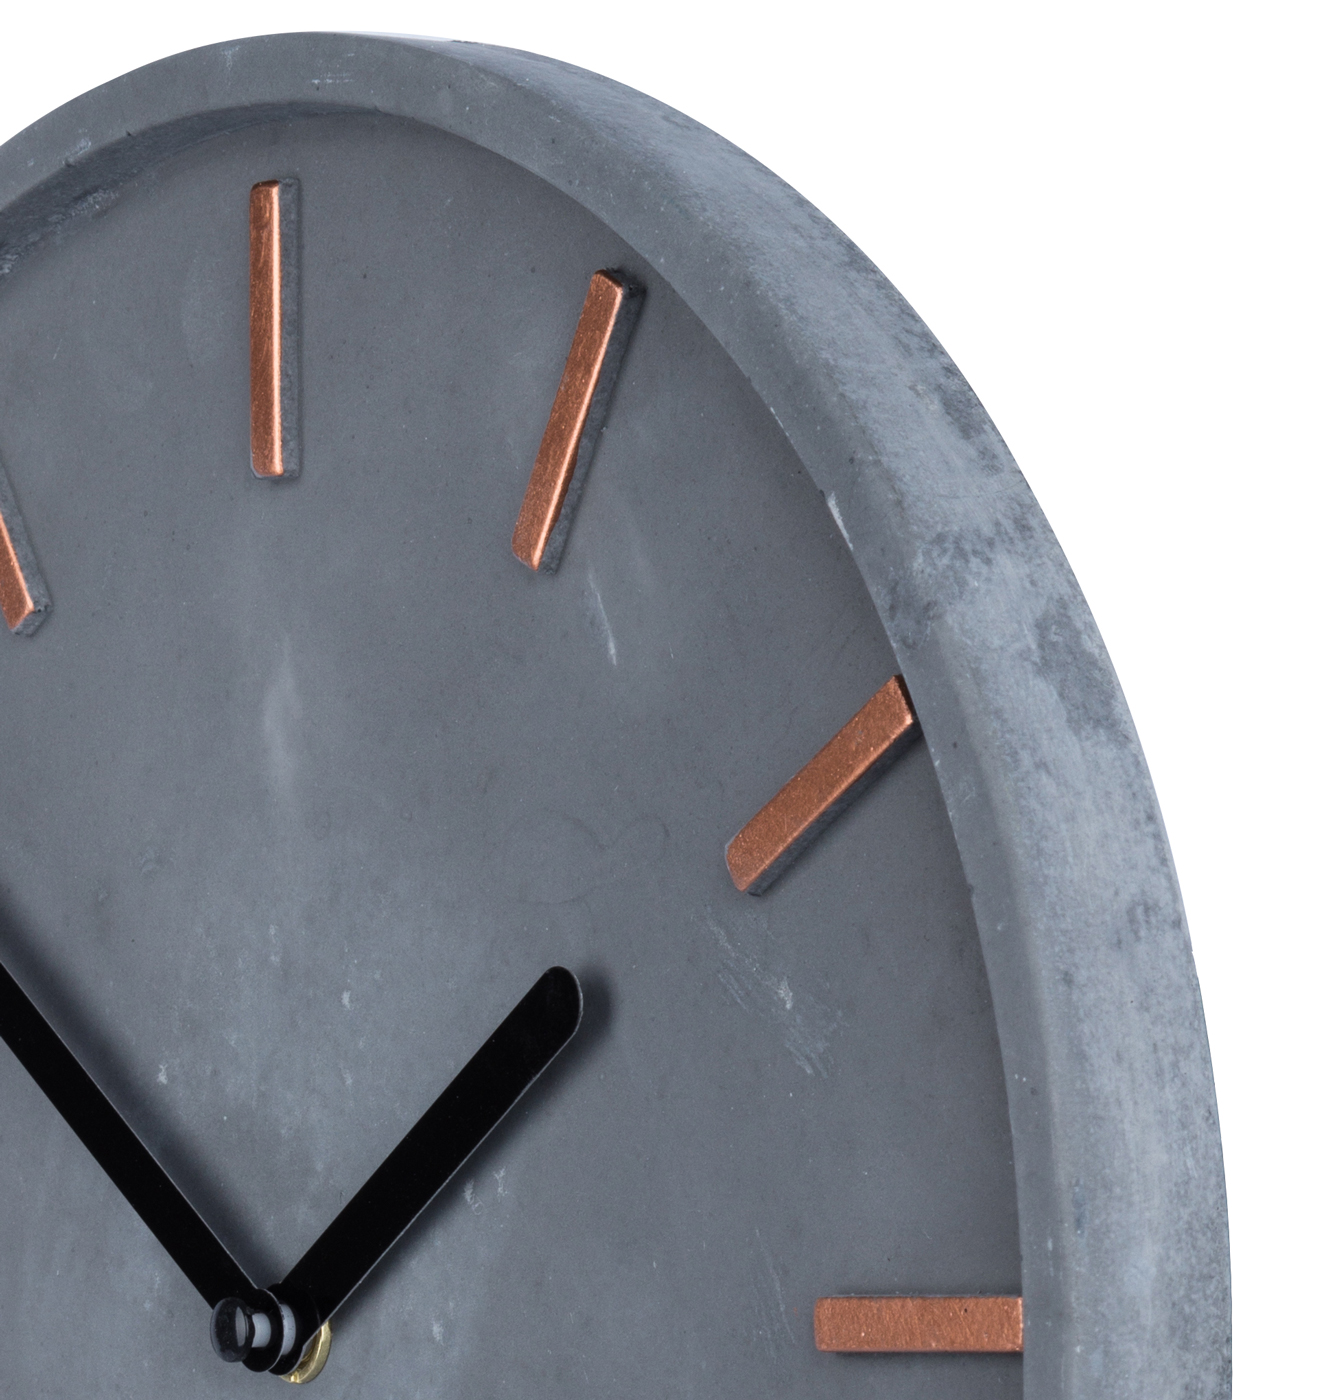 Hochwertige Beton-Uhr Wanduhr 30cm Grau Kupfer Uhrzeit modern Wanddeko